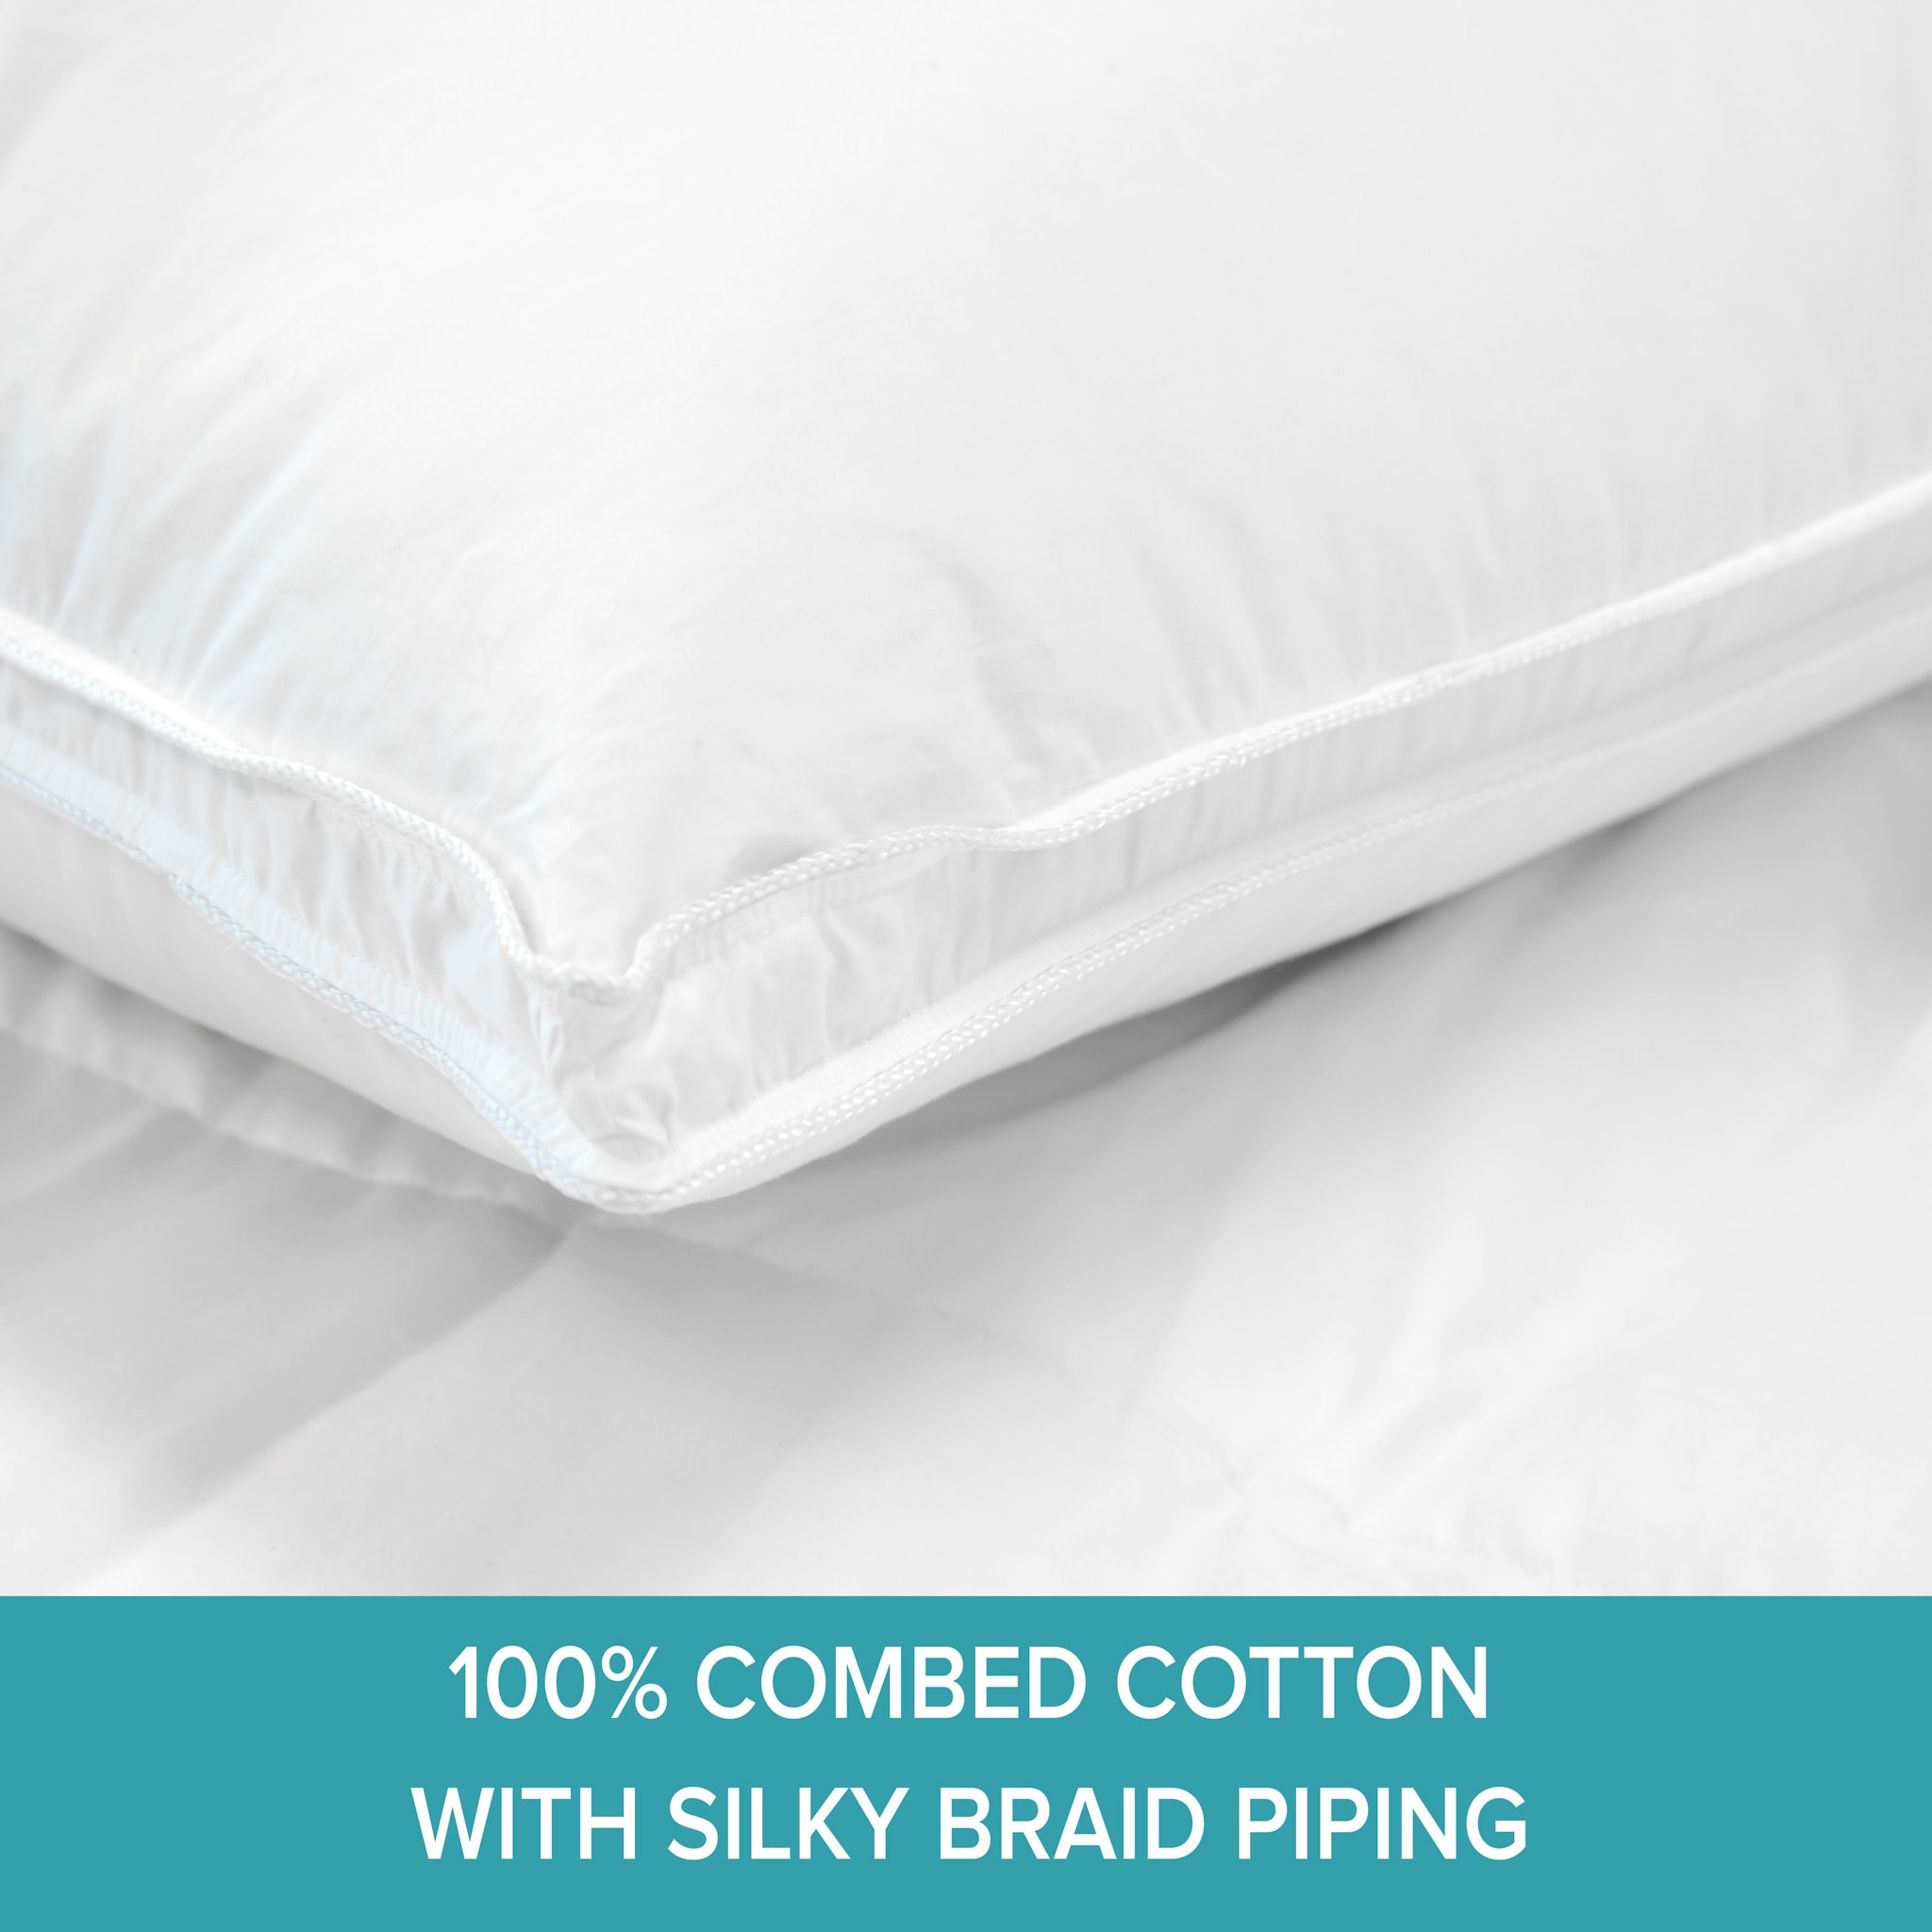 Sleep Solution: Mattresses, Pillows & Bedding